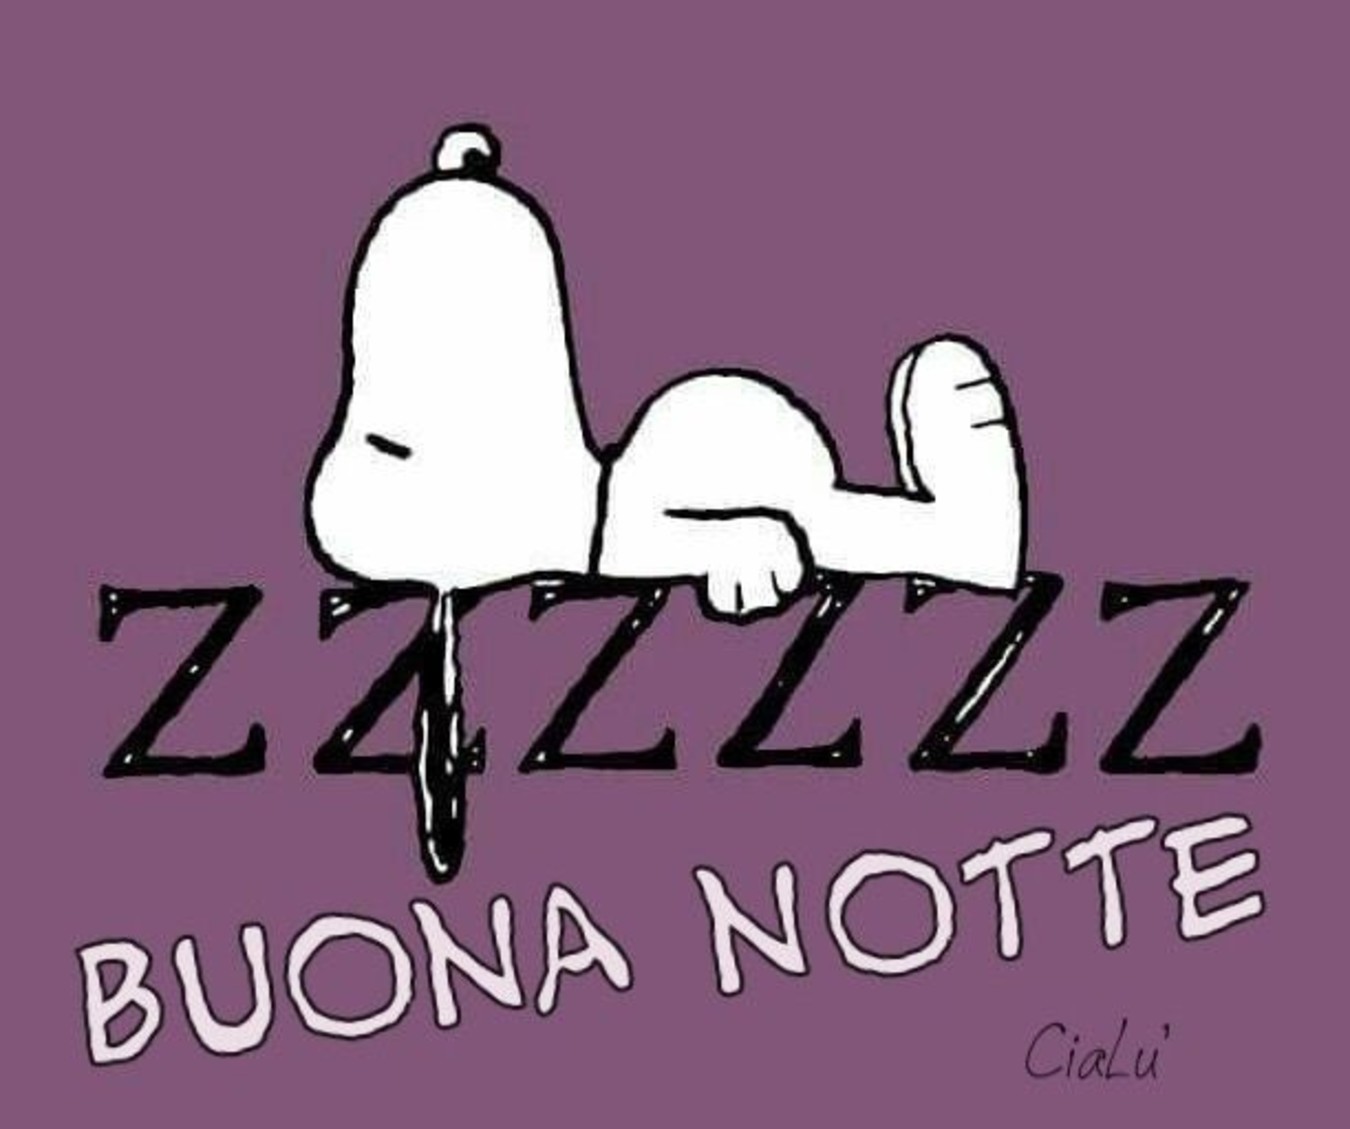 Zzz Buonanotte Snoopy